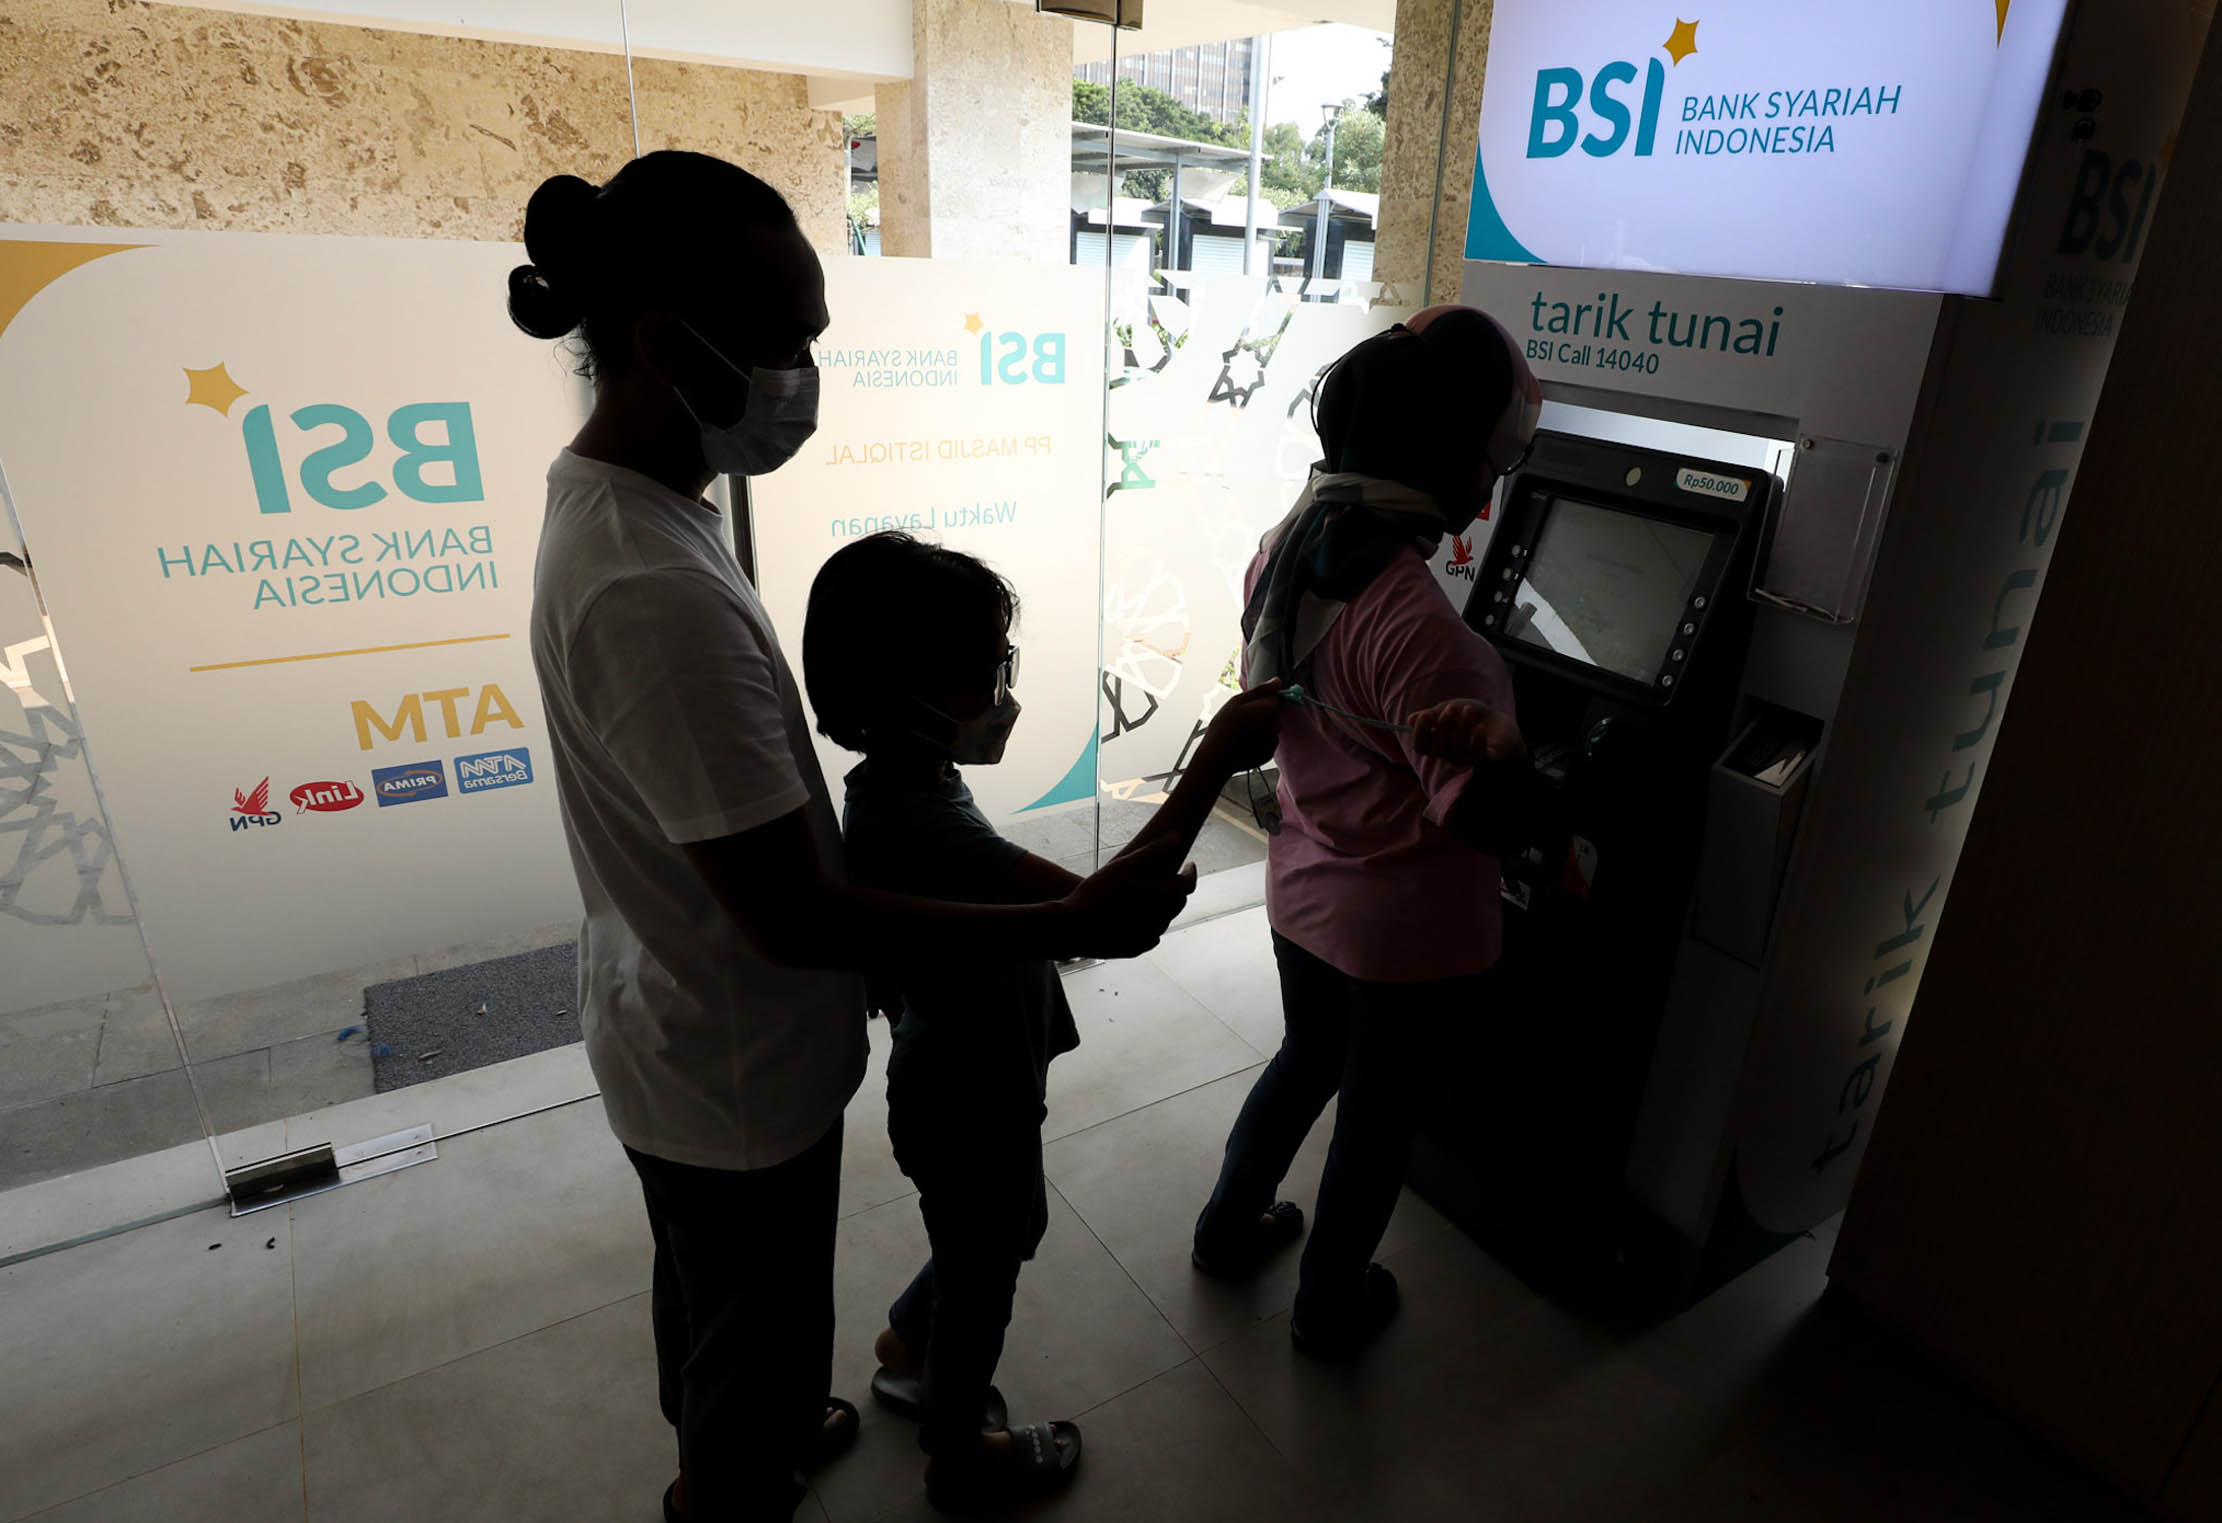 Antrian nasabah di sebuah ATM BSI kawasan Istiqlal Jakarta. Foto : Panji Asmoro/TrenAsia